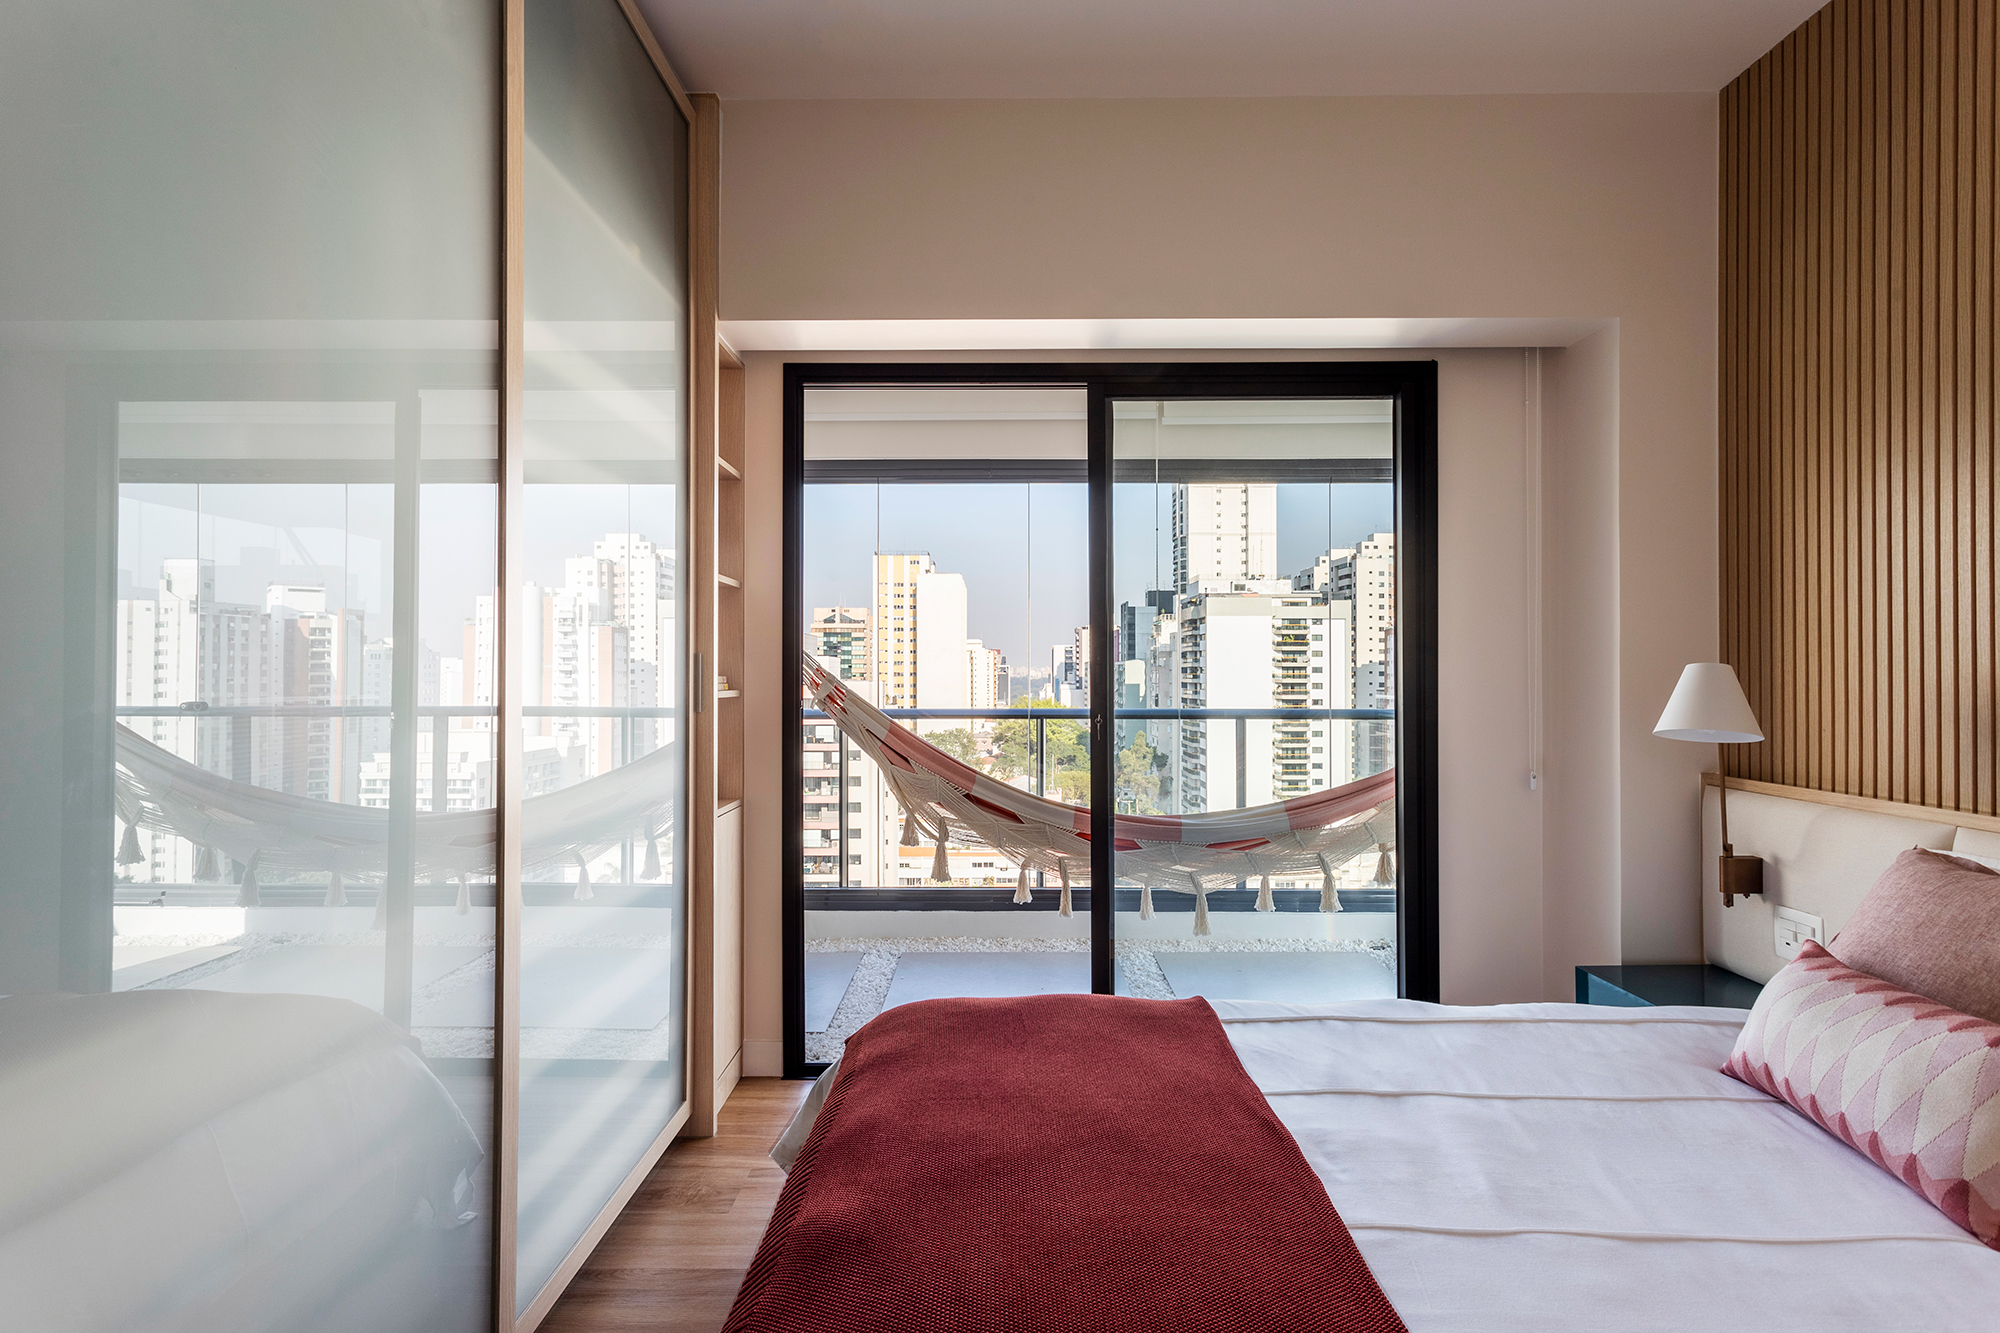 Apartamento ganha canto zen com rede de balanço e chão de pedriscos. Projeto de Interni Arquitetura. Na foto, quarto com varanda com rede e parede ripada.